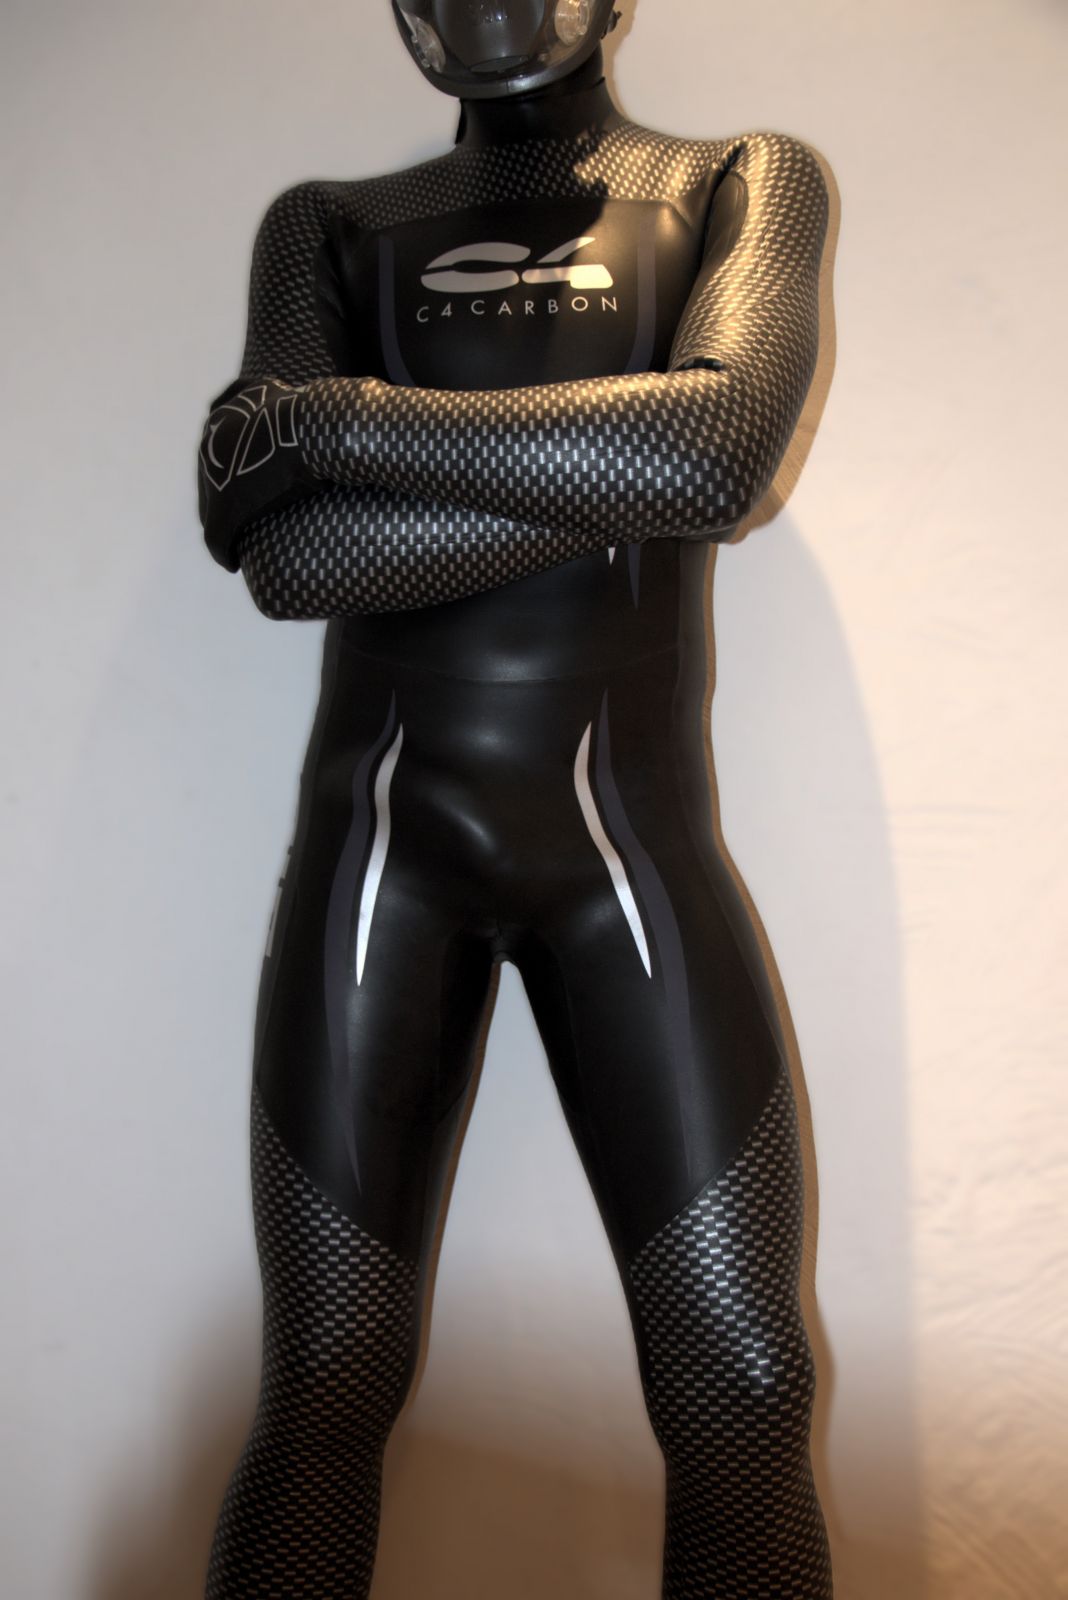 Nouvelle combi d'apnée ;-)
Mots-clés: néoprène combinaison triathlon apnée masque gants wetsuit